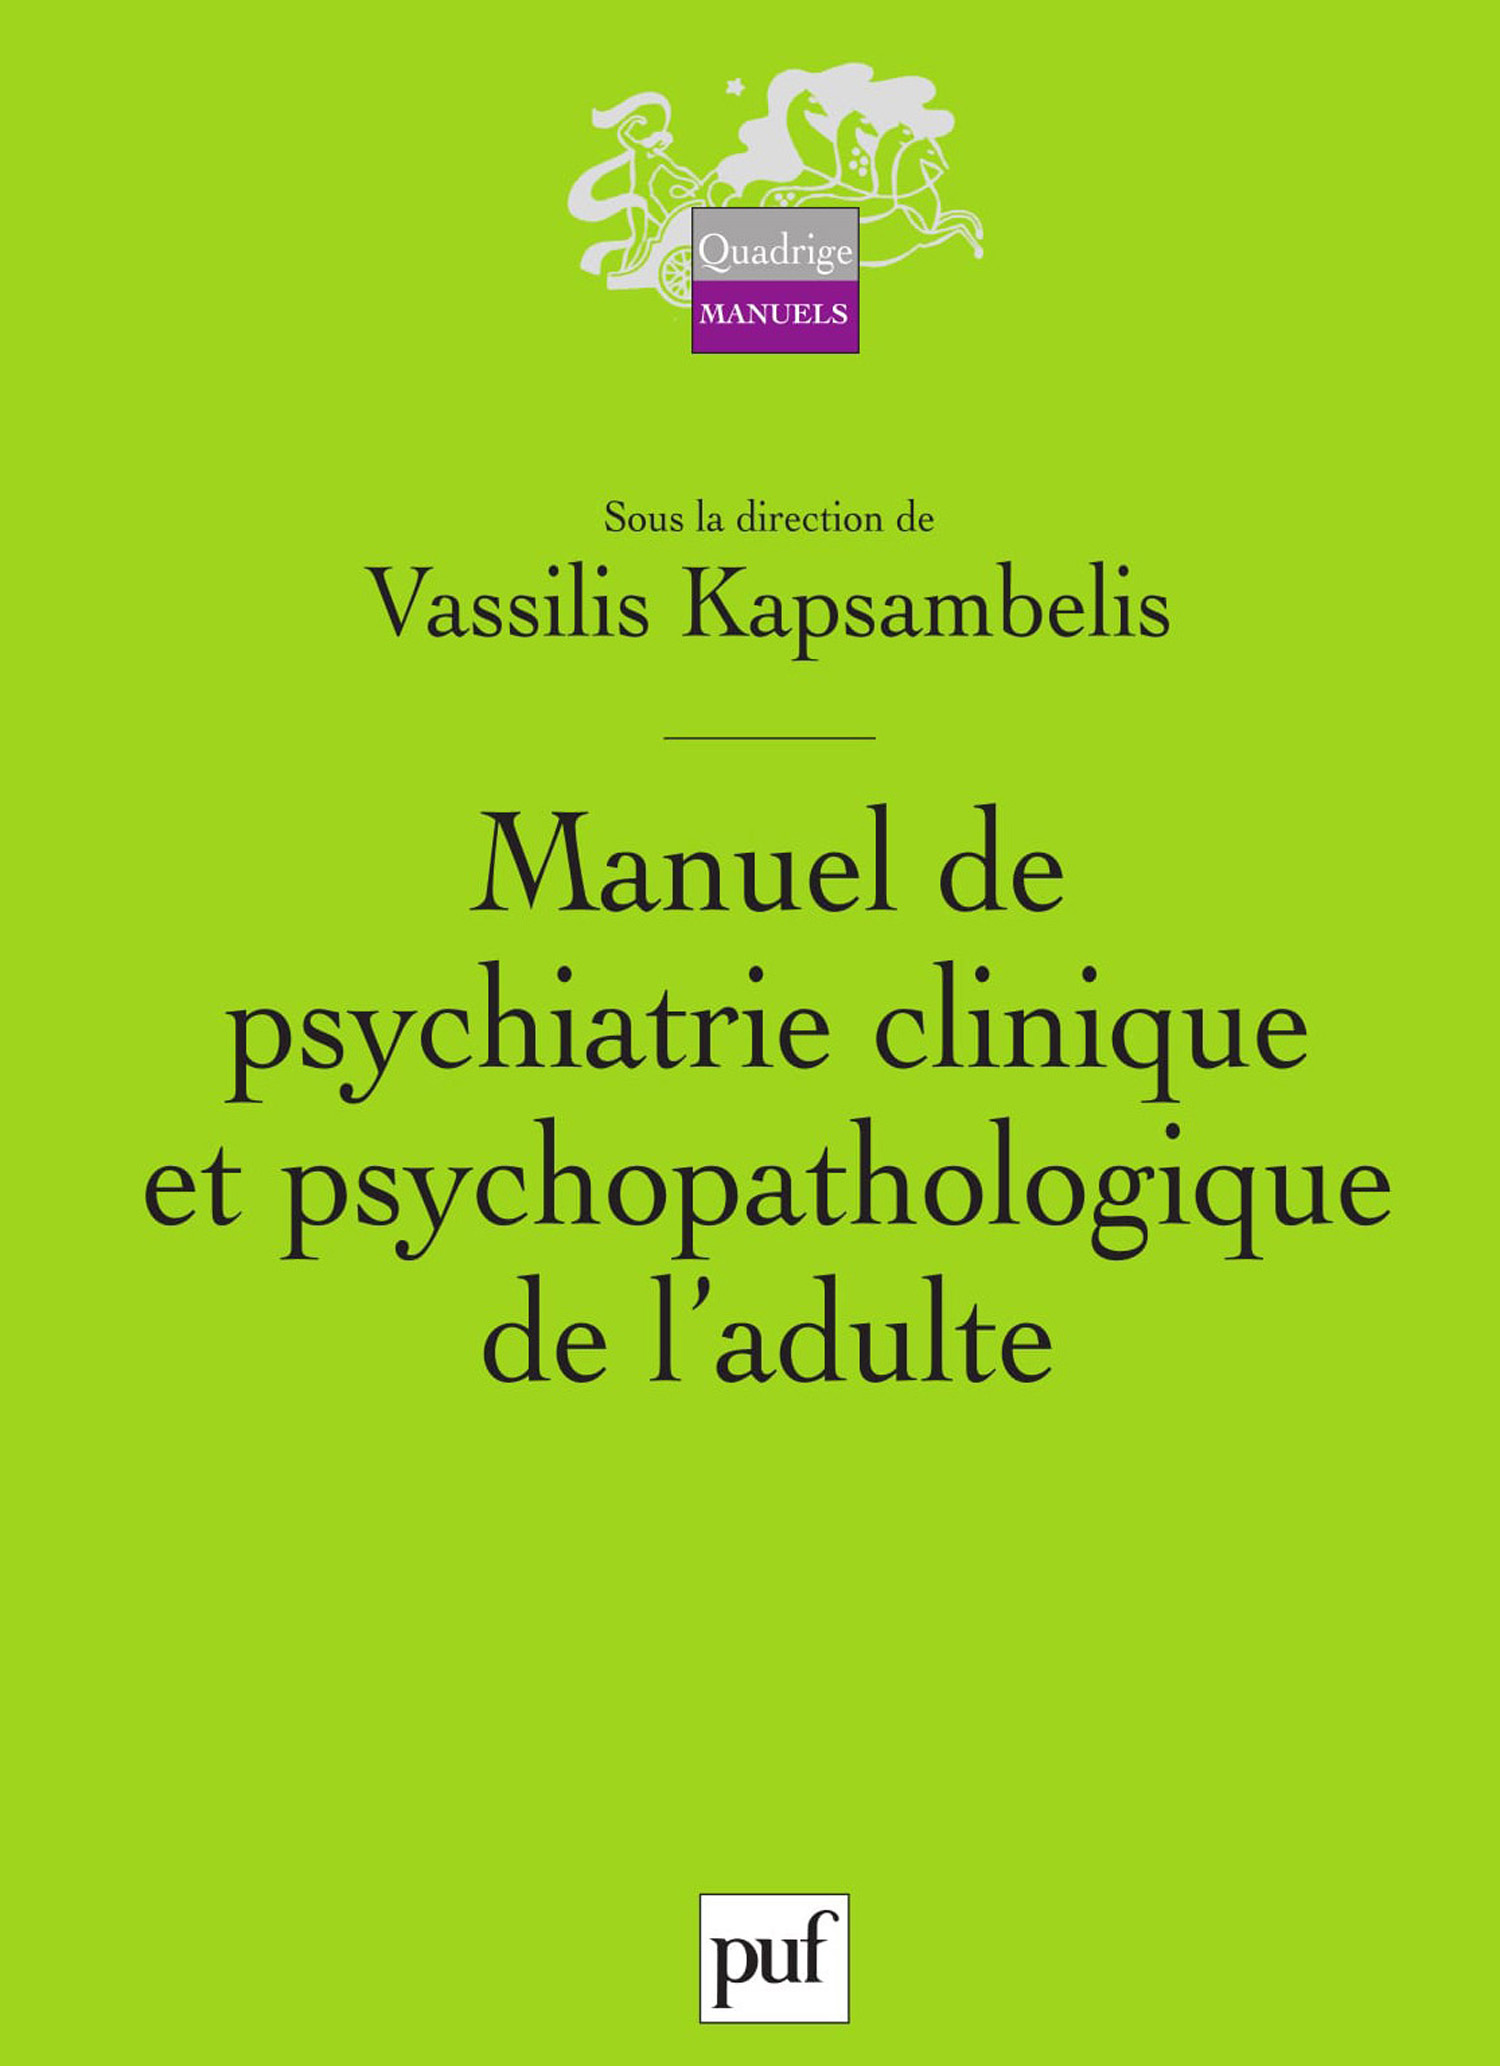 Manuel de psychiatrie clinique et psychopathologique de l'adulte De Vassilis Kapsambelis - Presses Universitaires de France